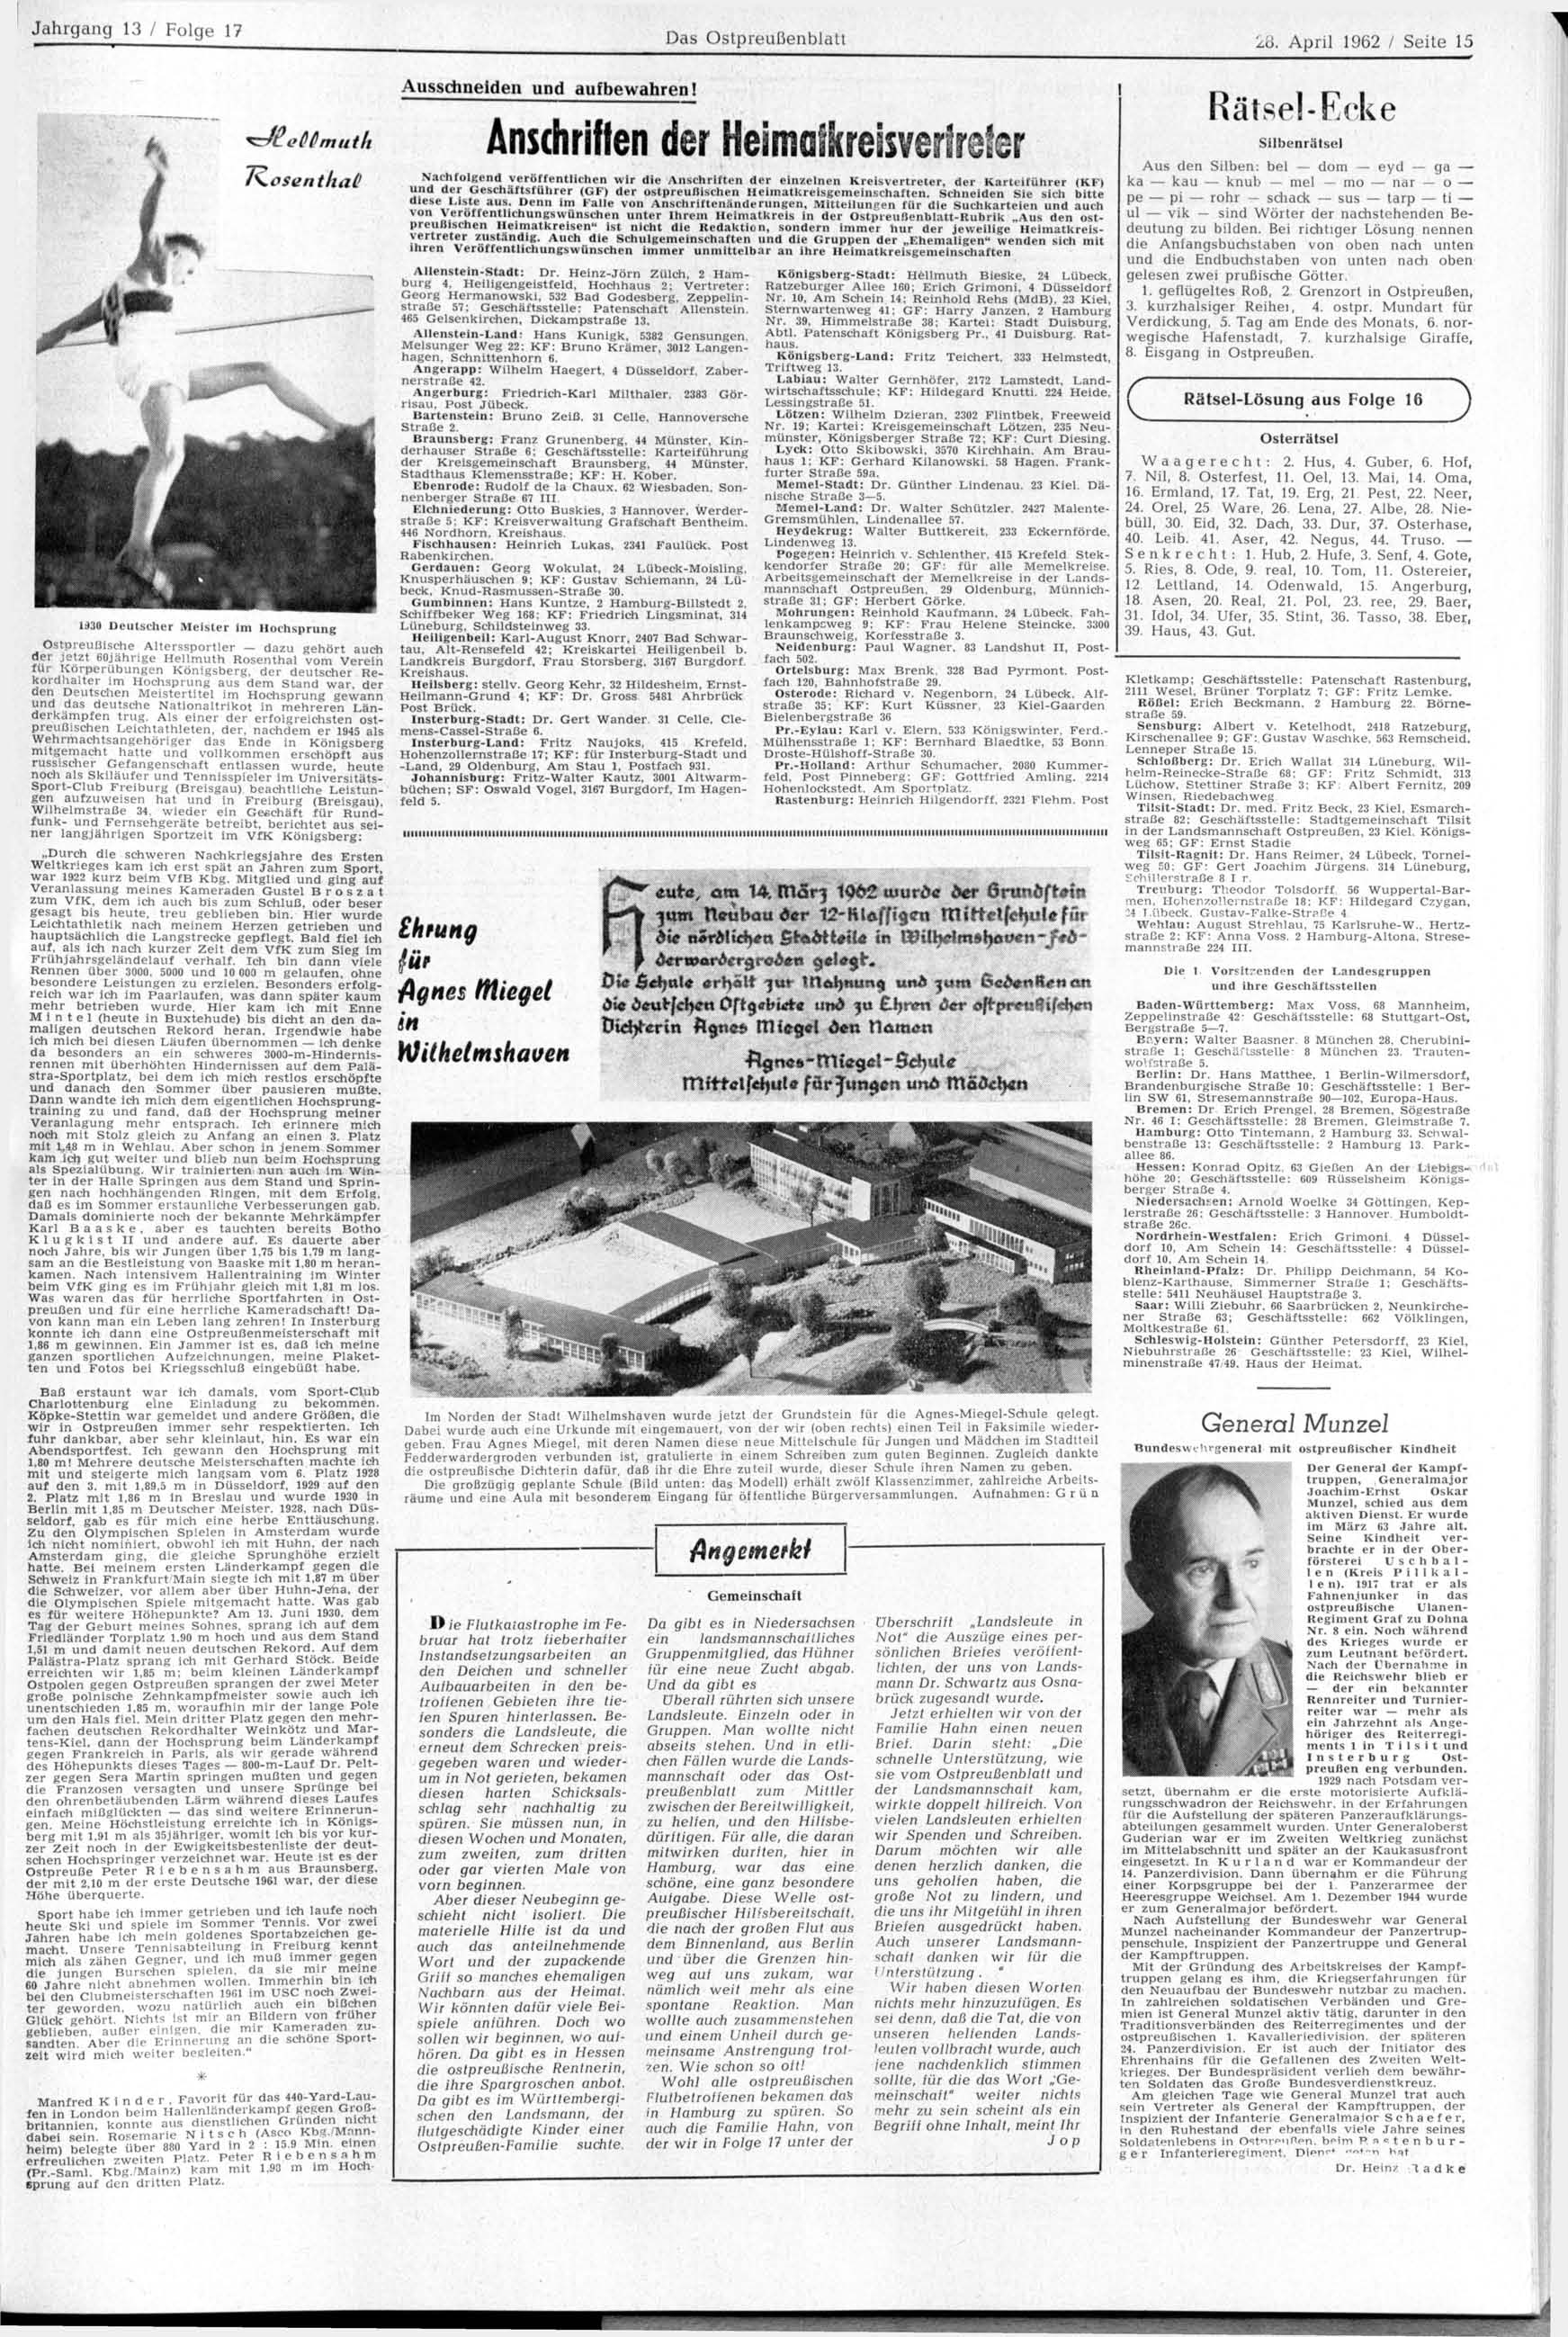 Das Ostpreußenblatt 28. April 1962 / Seite 15 T^osenthai 1 1930 Deutscher Meister im Hochsprung Ostpreußische Alterssportler dazu gehört auch der jetzt eo.